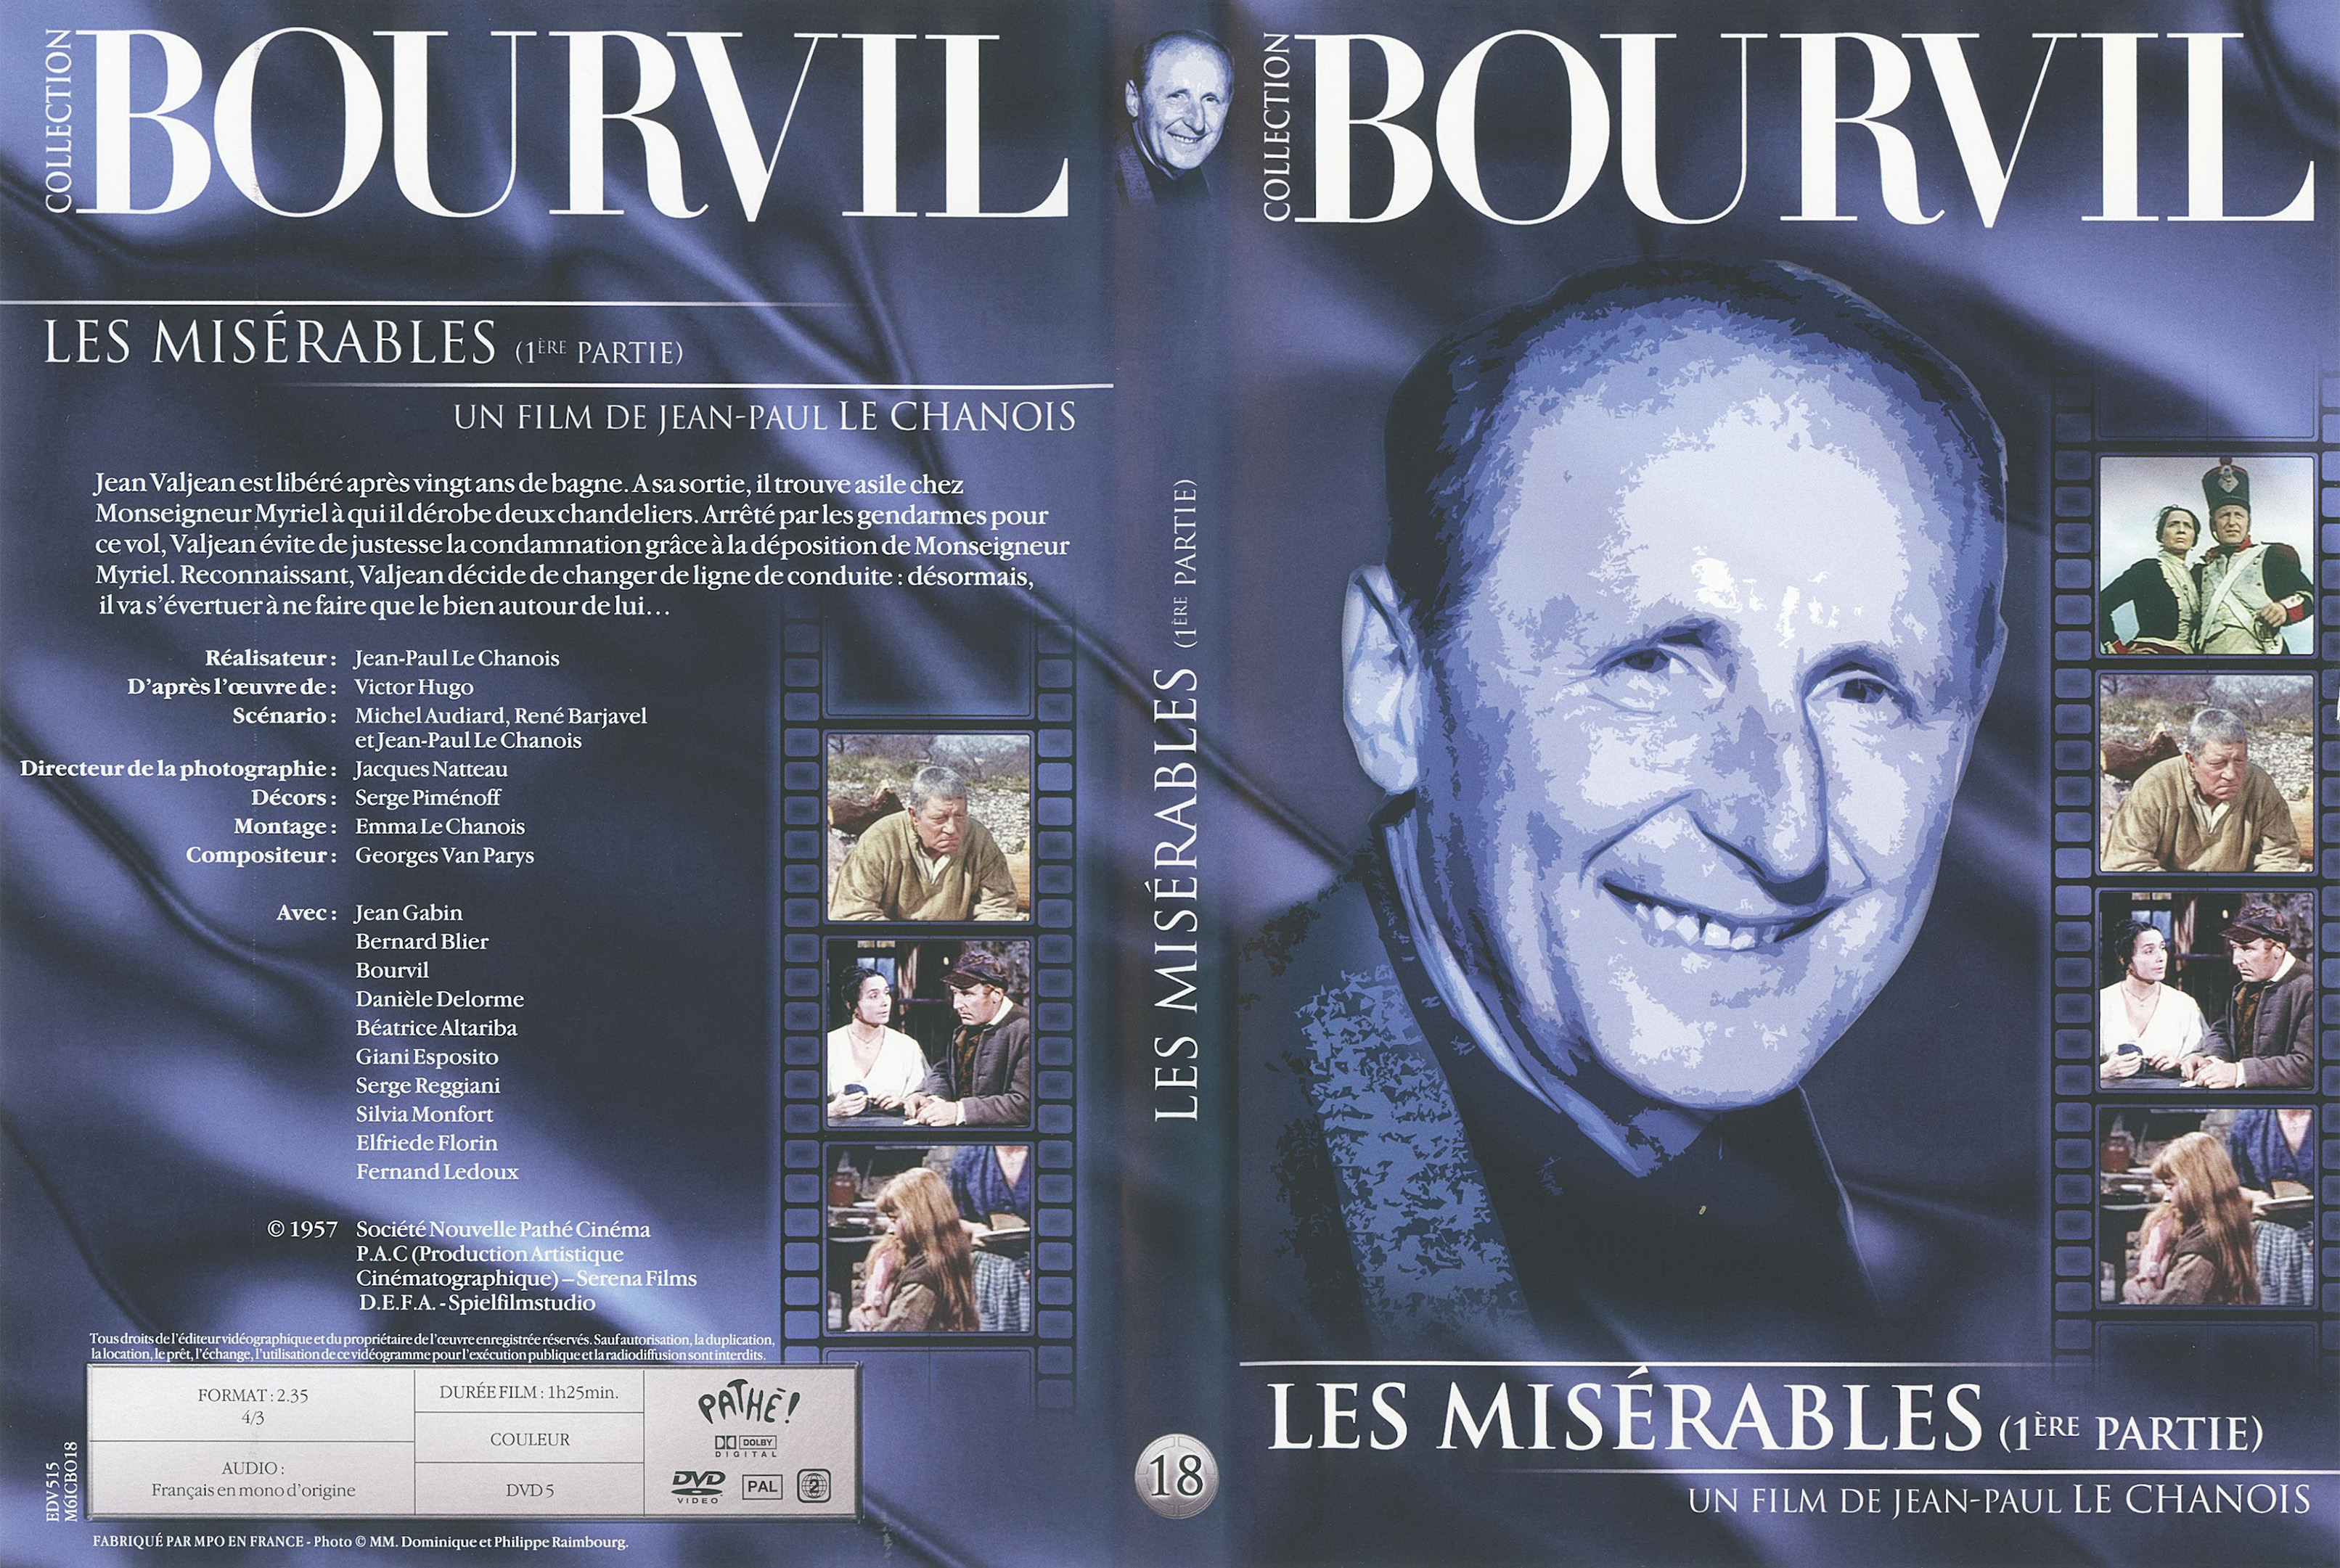 Jaquette DVD Les misrables (Gabin) 1 re poque v3